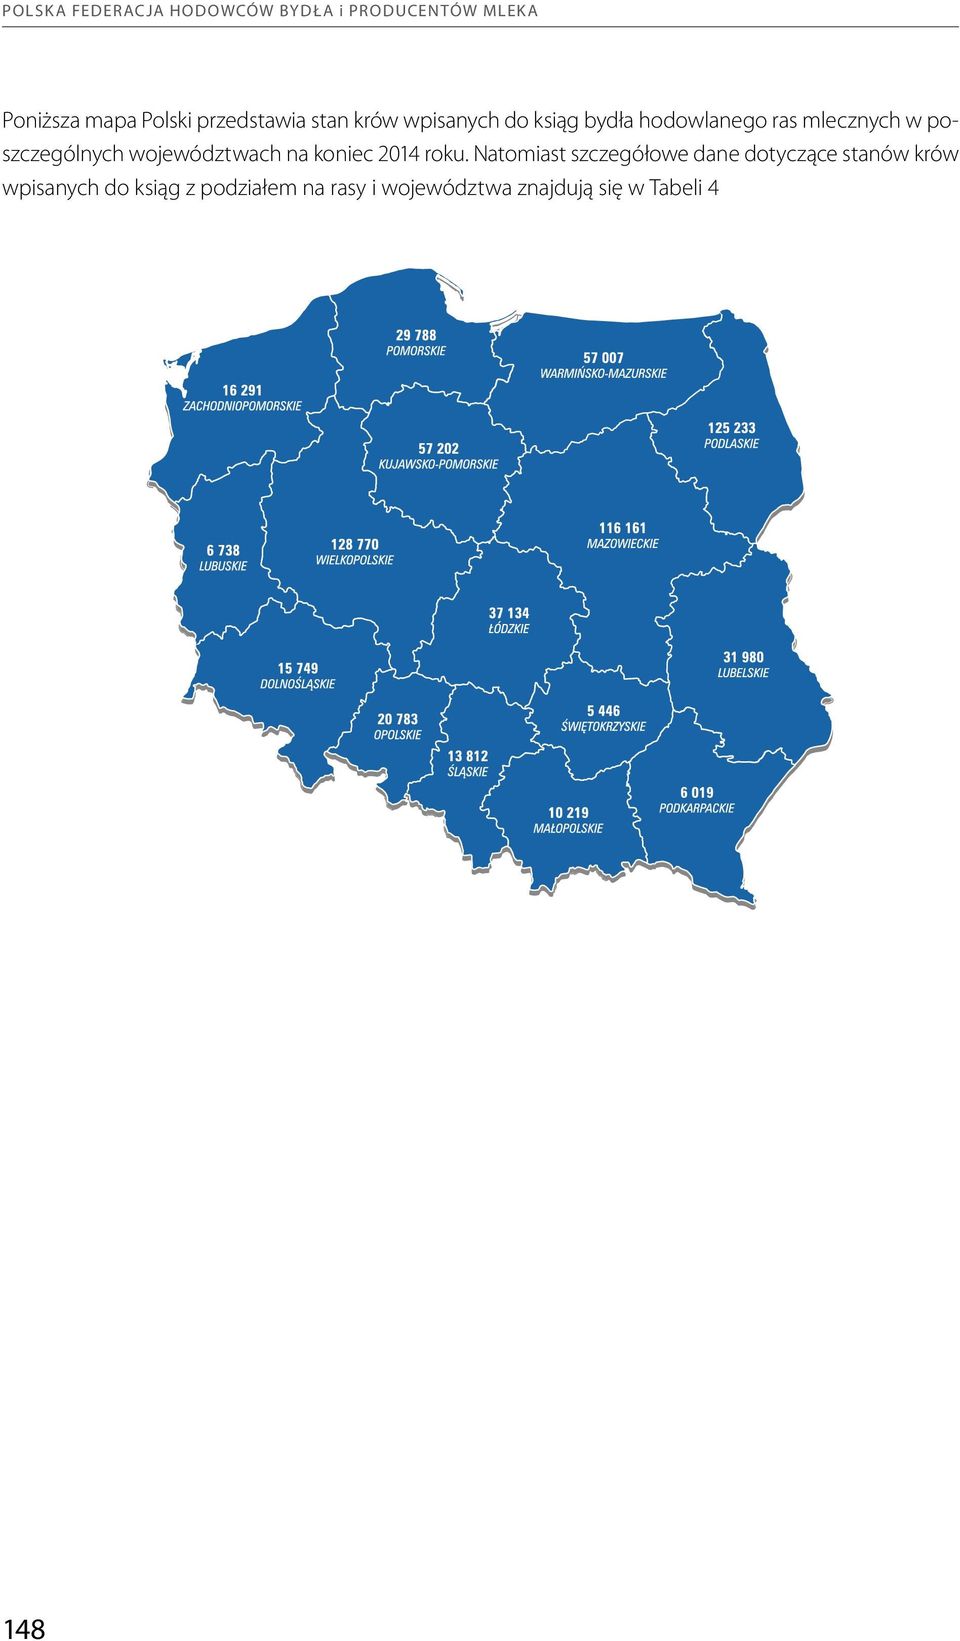 poszczególnych województwach na koniec 2014 roku.